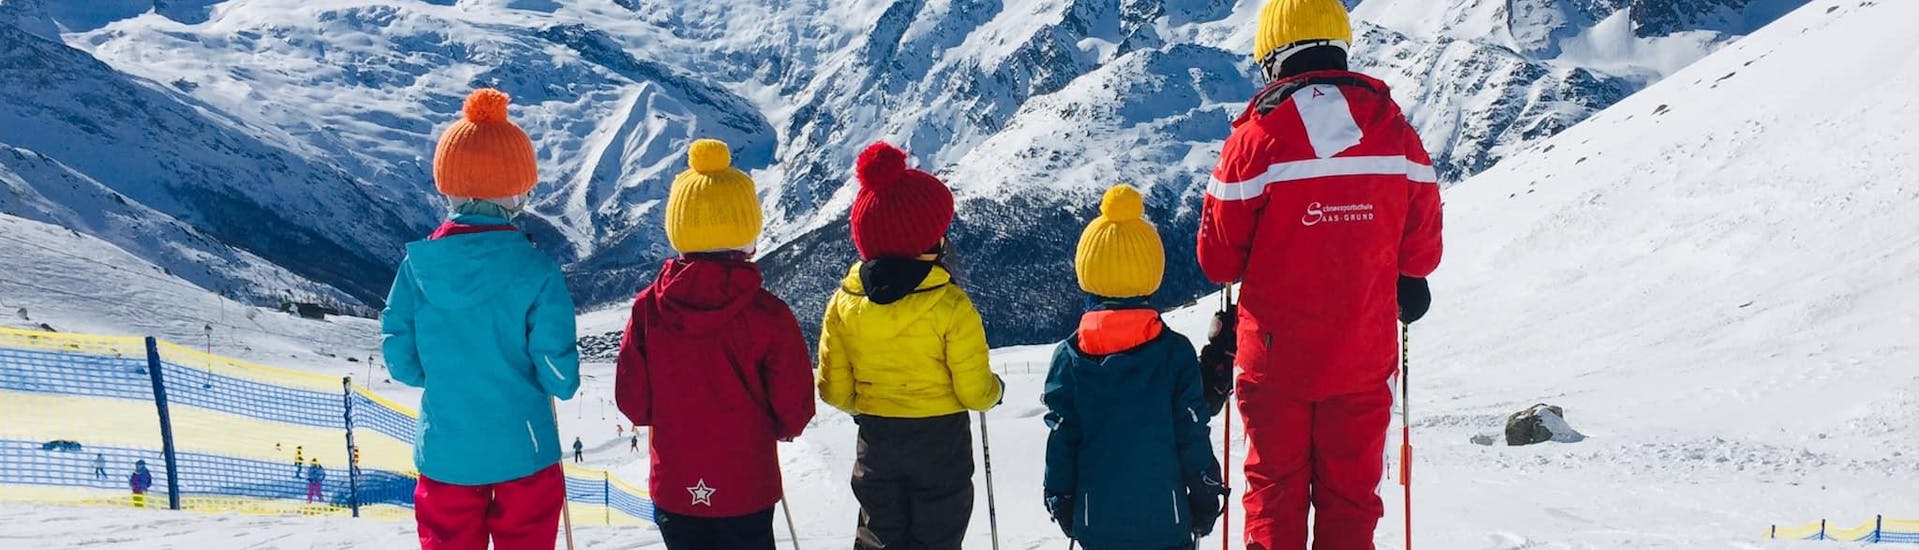 Lezioni di sci per bambini a partire da 6 anni per tutti i livelli con Swiss Ski School Saas-Grund.